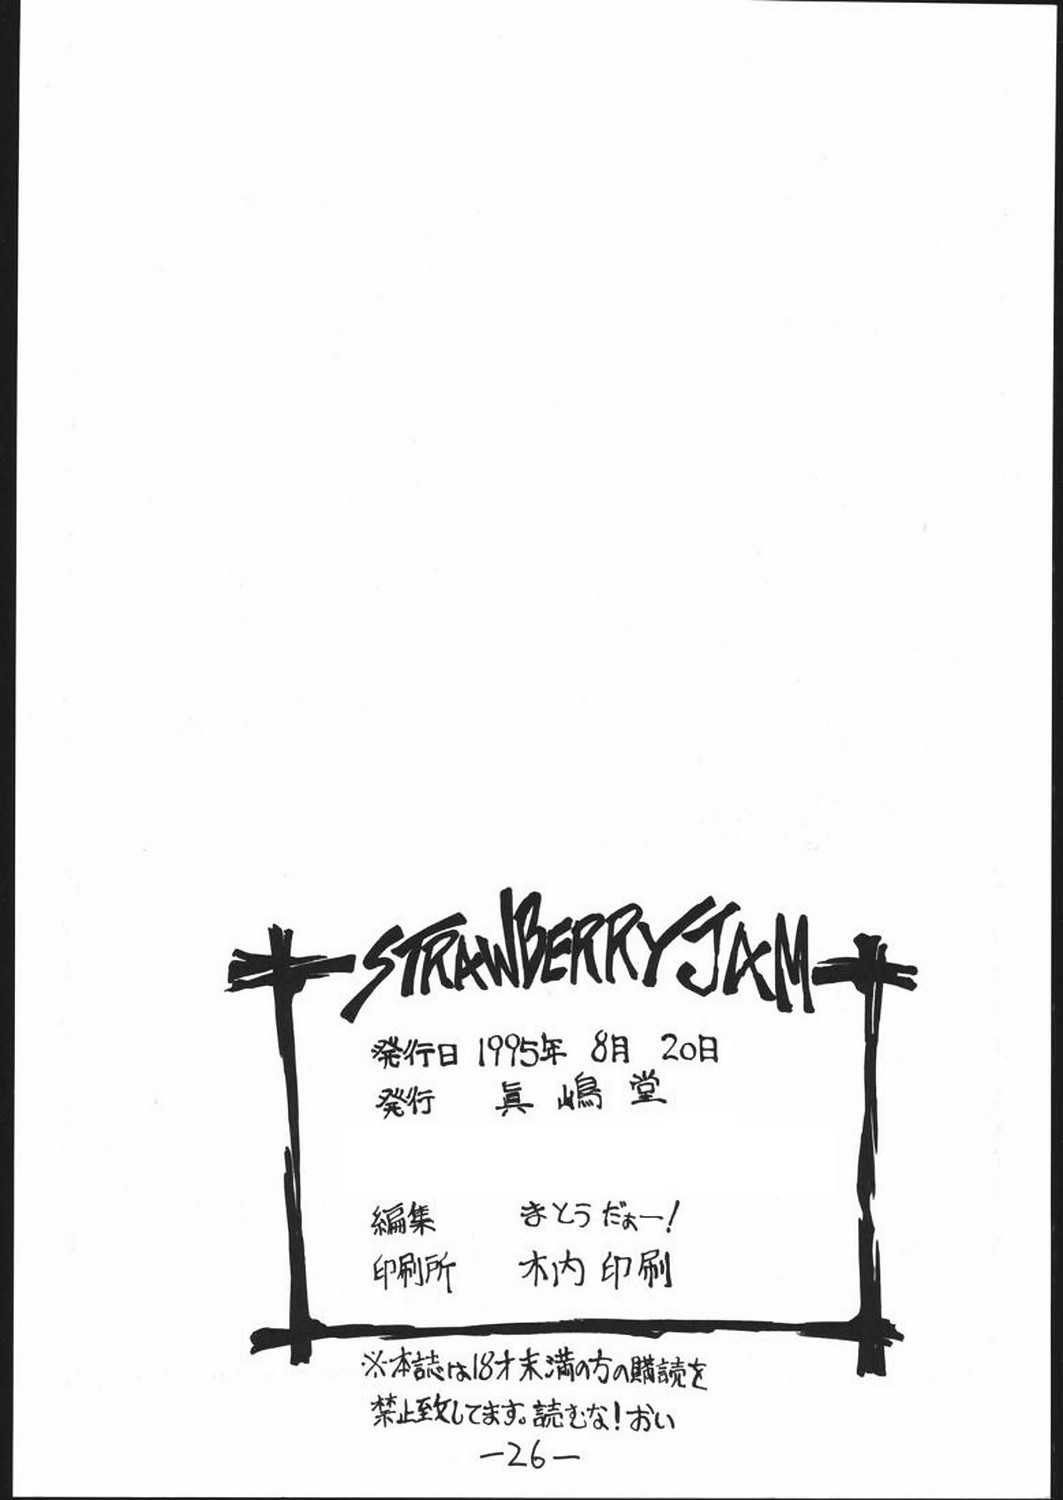 [Majimadou] STRAWBERRY JAM (Samurai Spirits) [眞嶋堂] STRAWBERRY JAM (サムライスピリッツ)